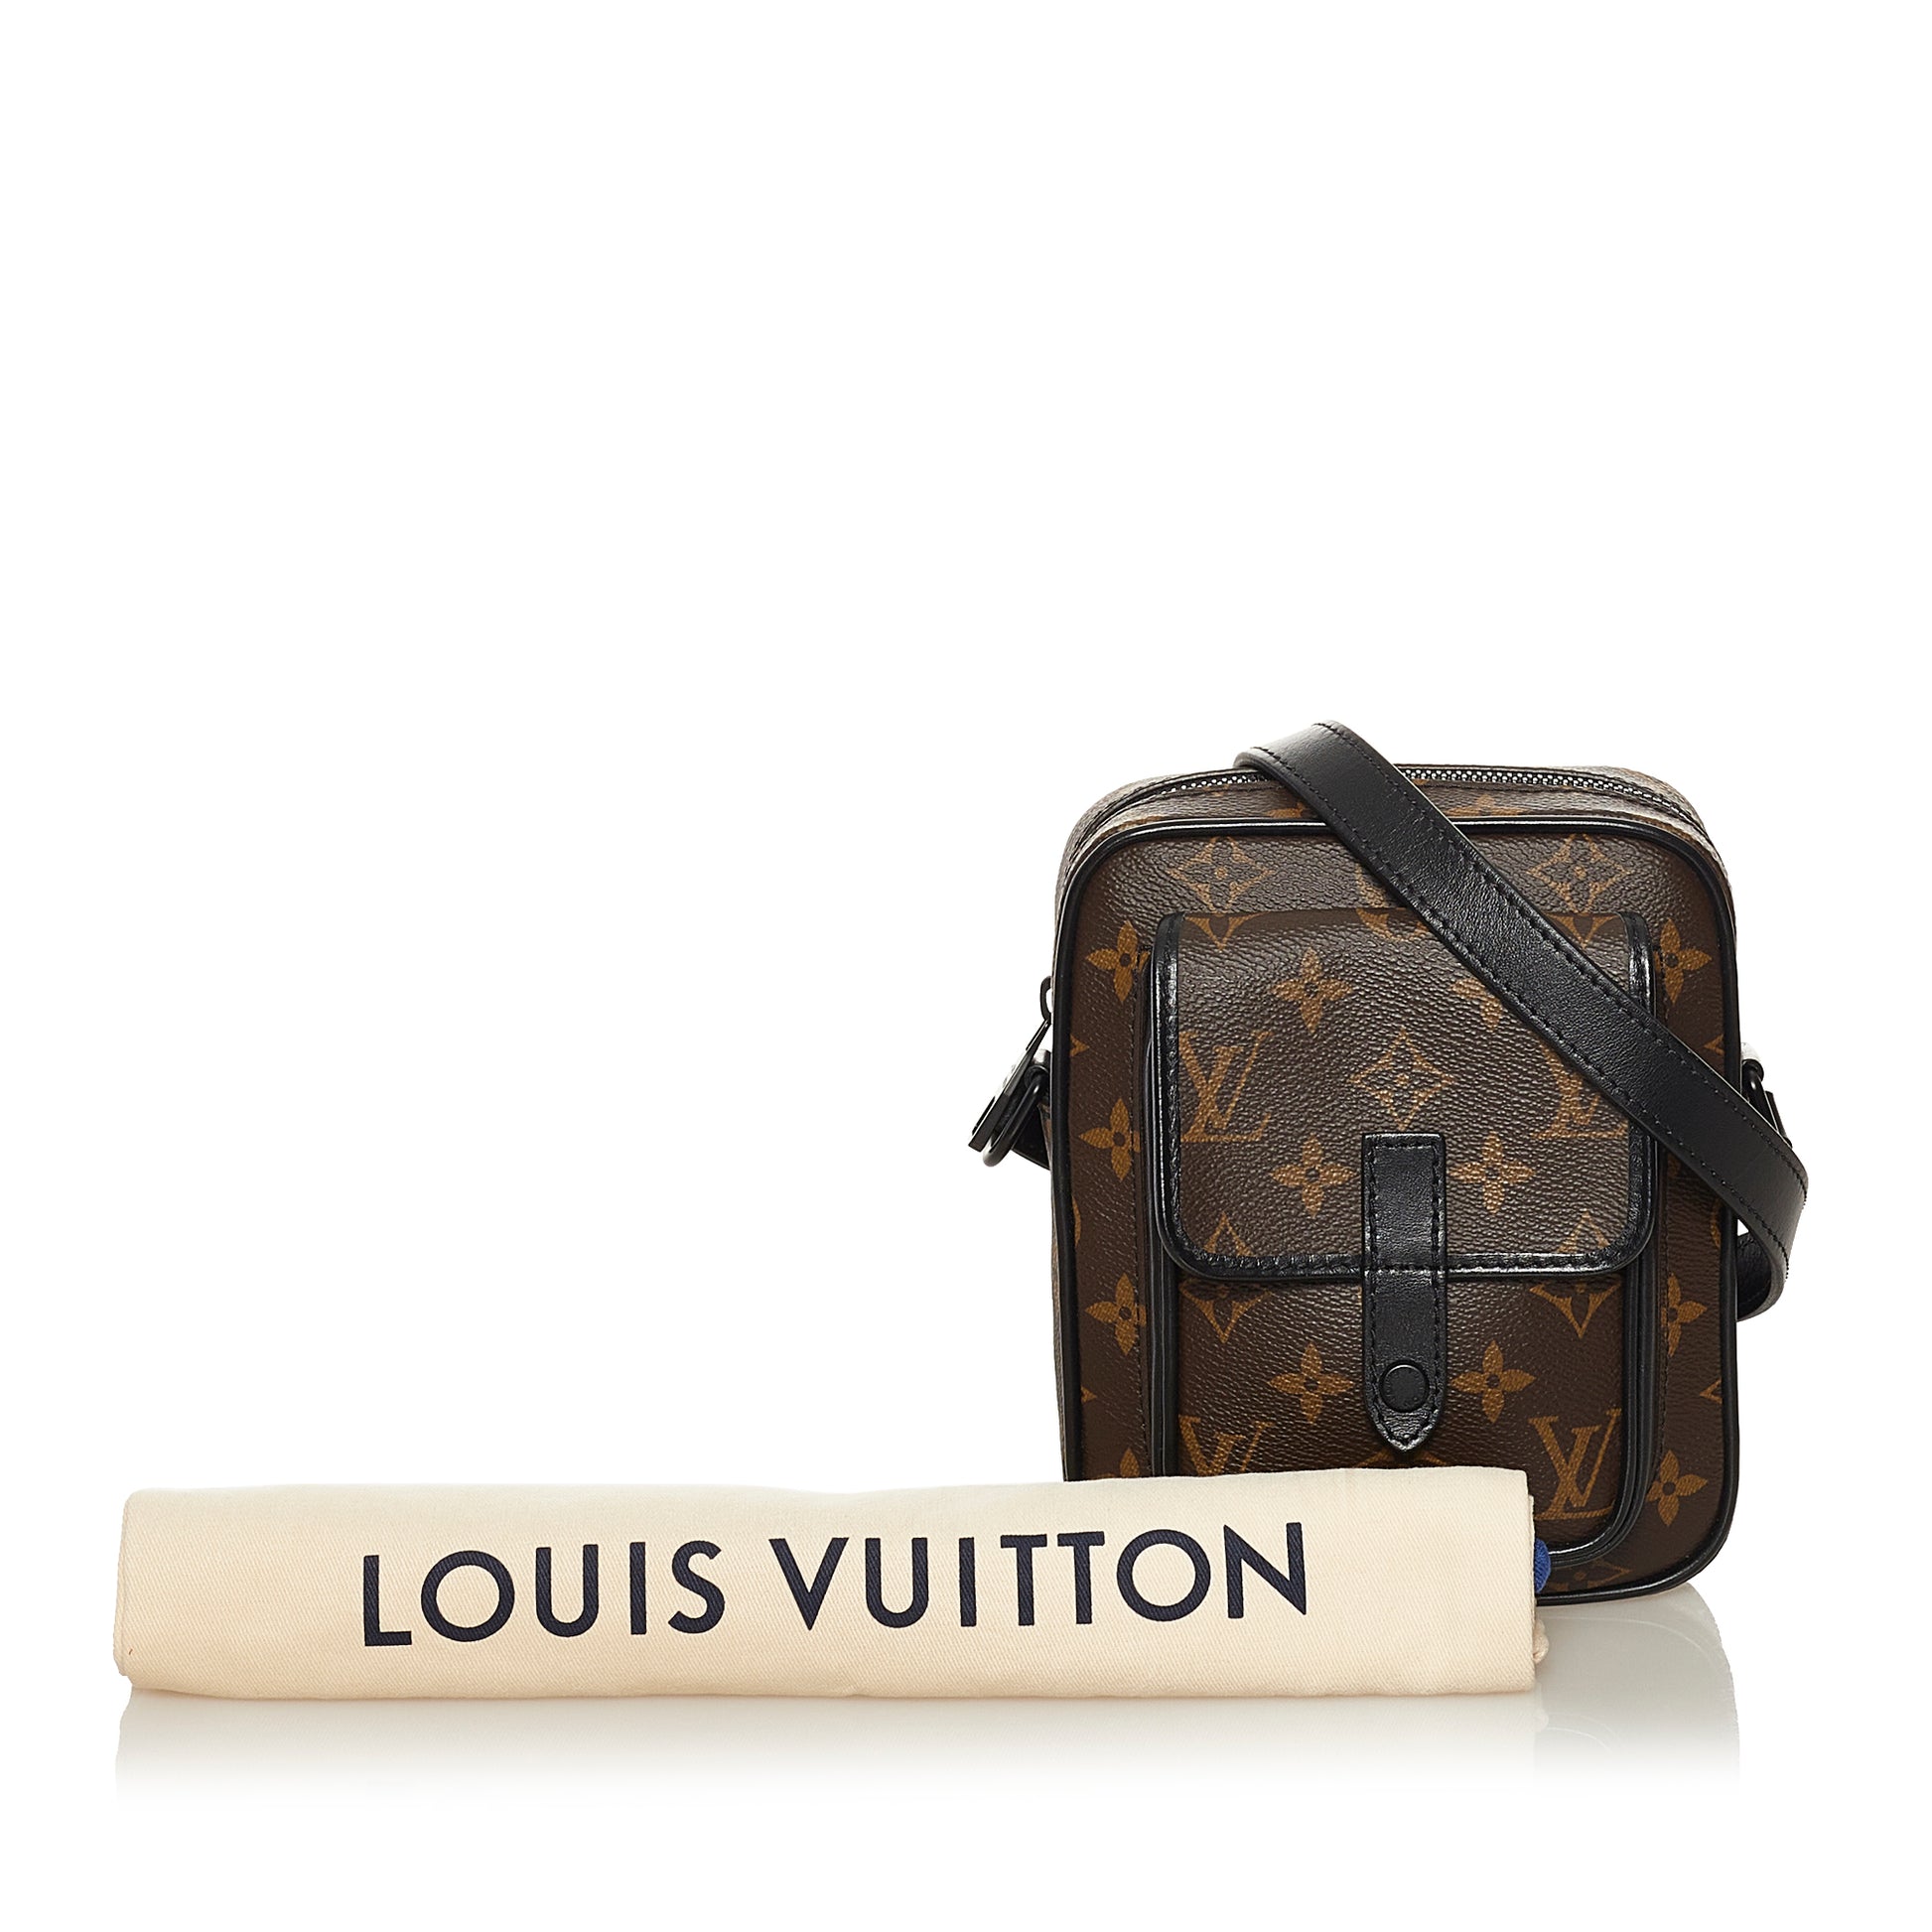 LOUIS VUITTON Monogram Macassar Christopher Wearable Wallet Bag M69404  90208500